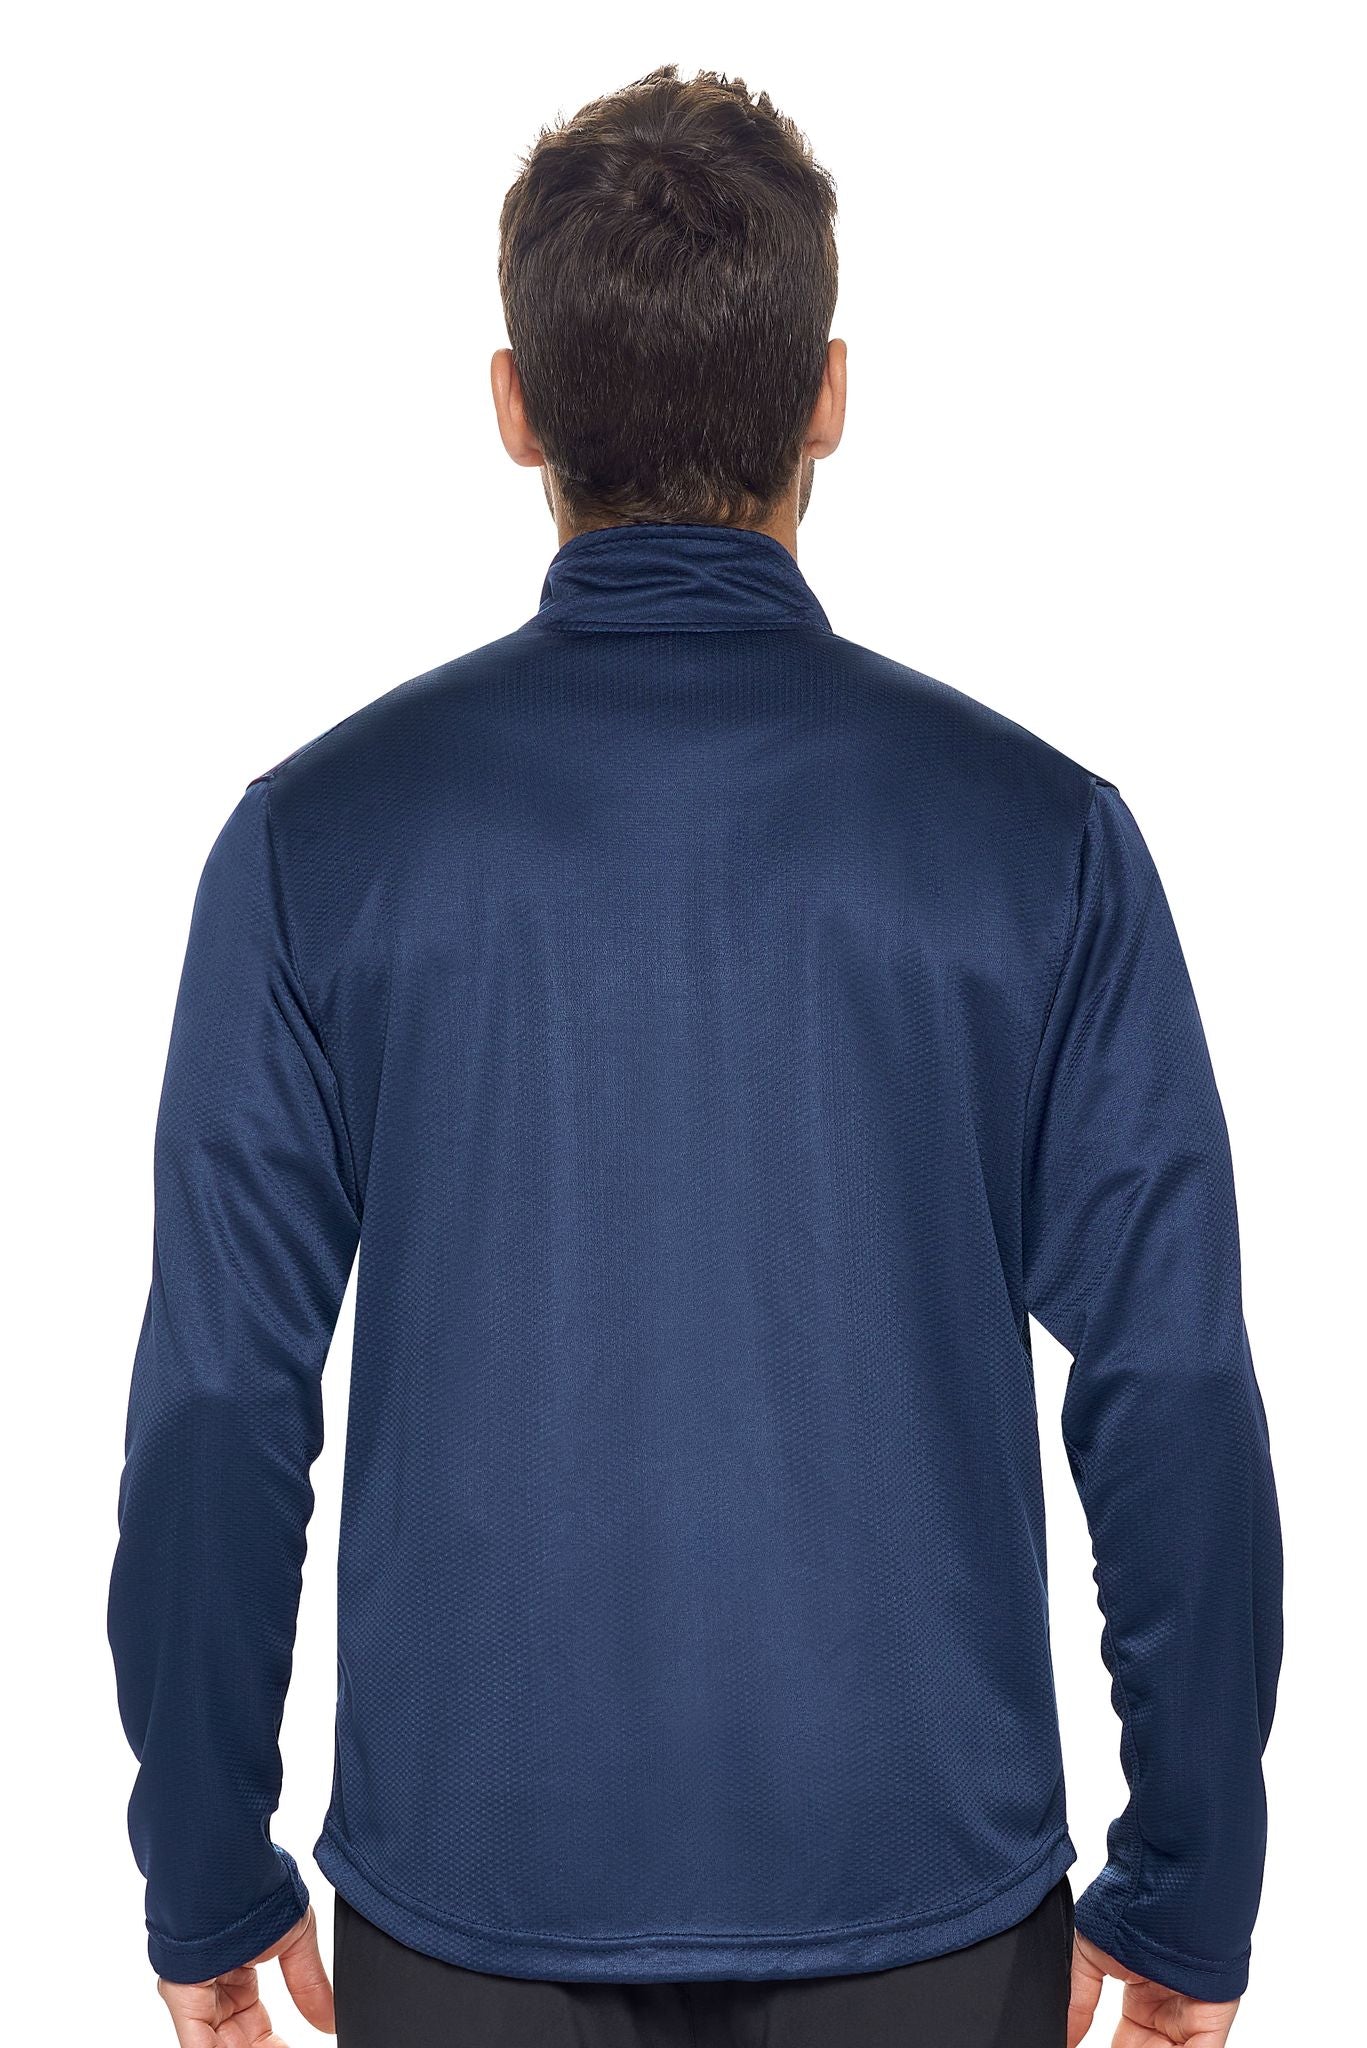 Men's Sportsman Moisture-Wicking Jacket